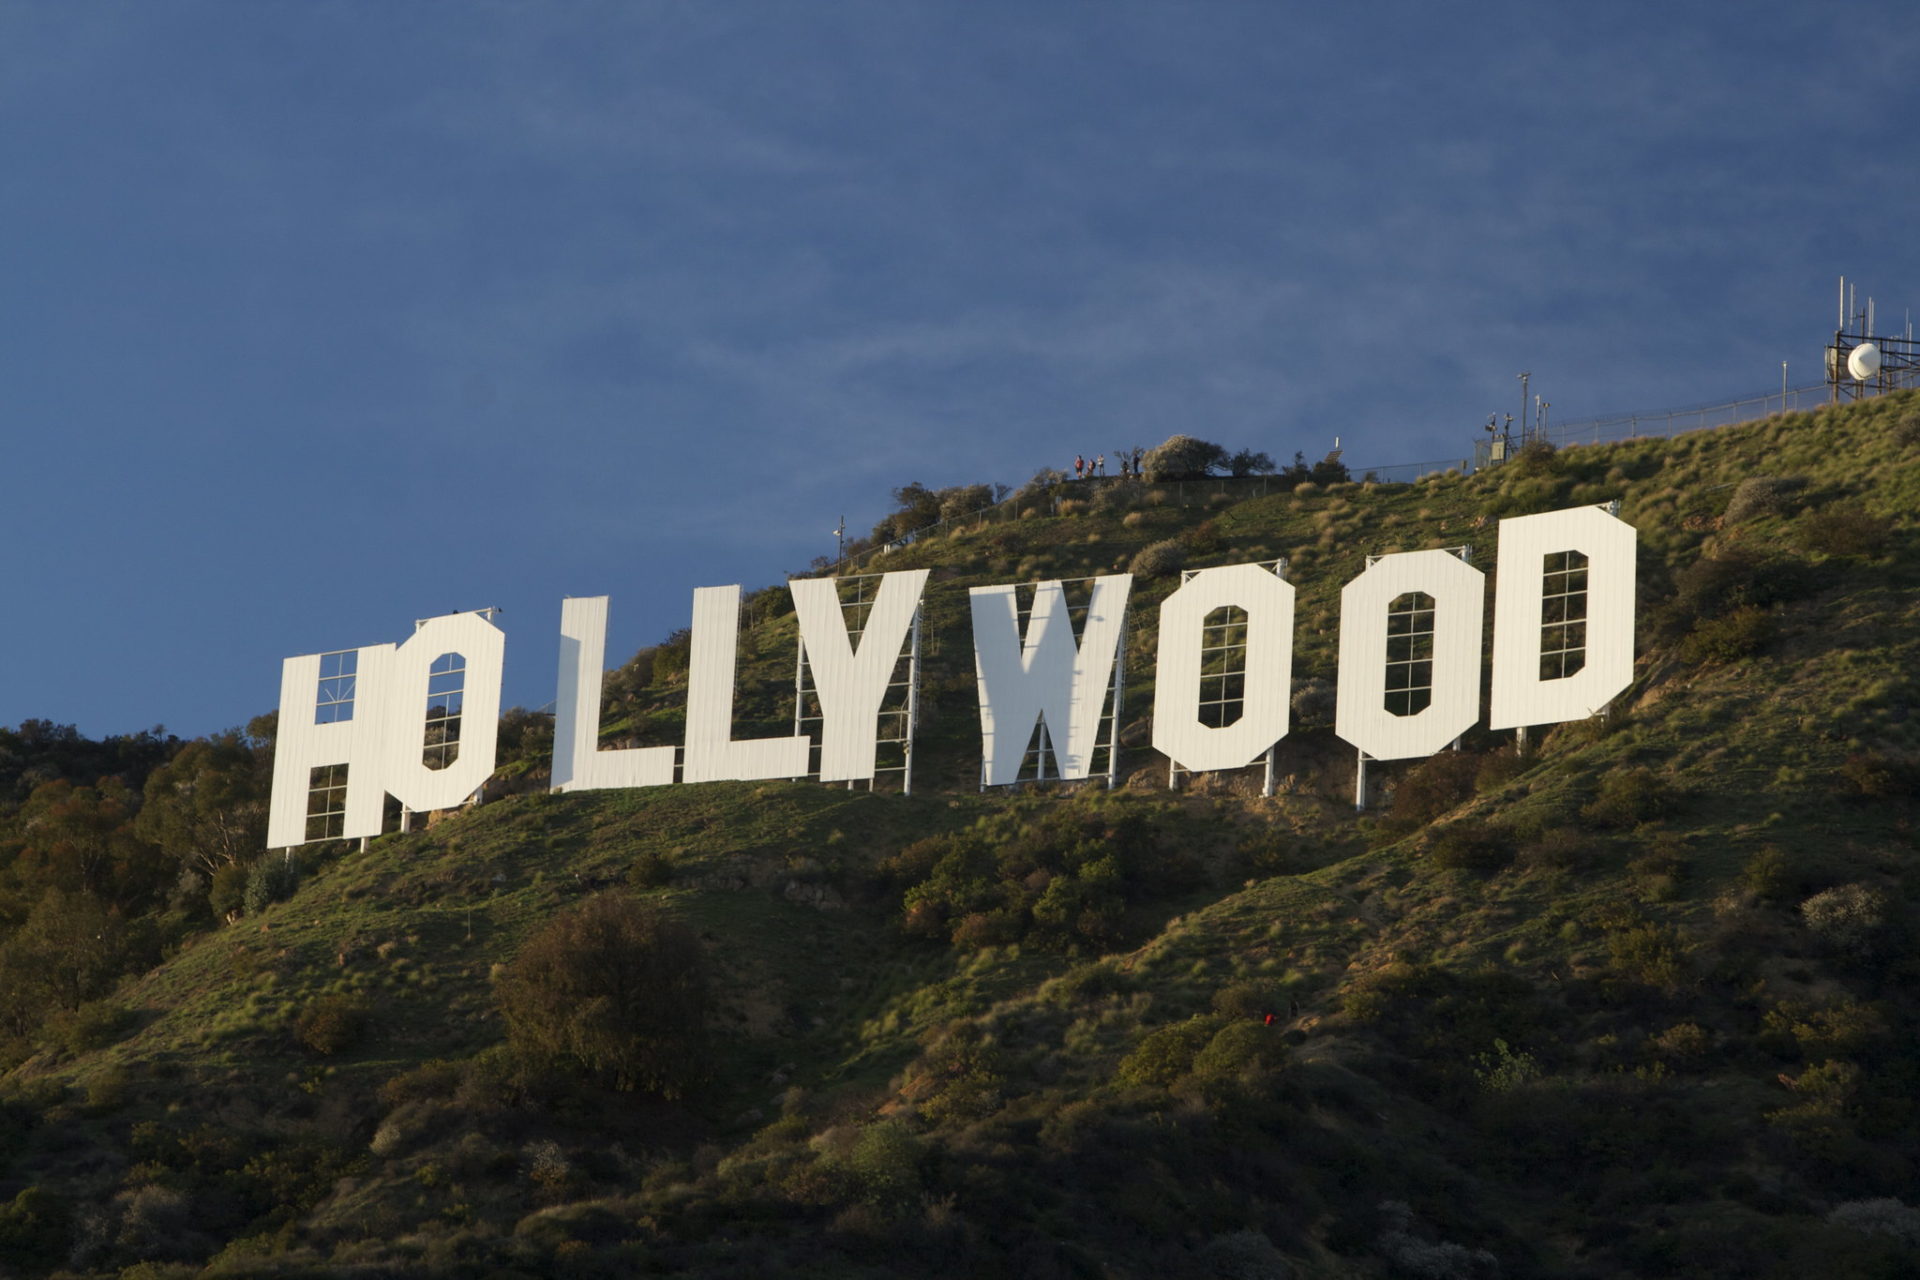 O famoso letreiro de Hollywood, a marca de um bairro que se tornou sinônimo da indústria do cinema dos EUA (crédito: Flickr / Gnaphron)